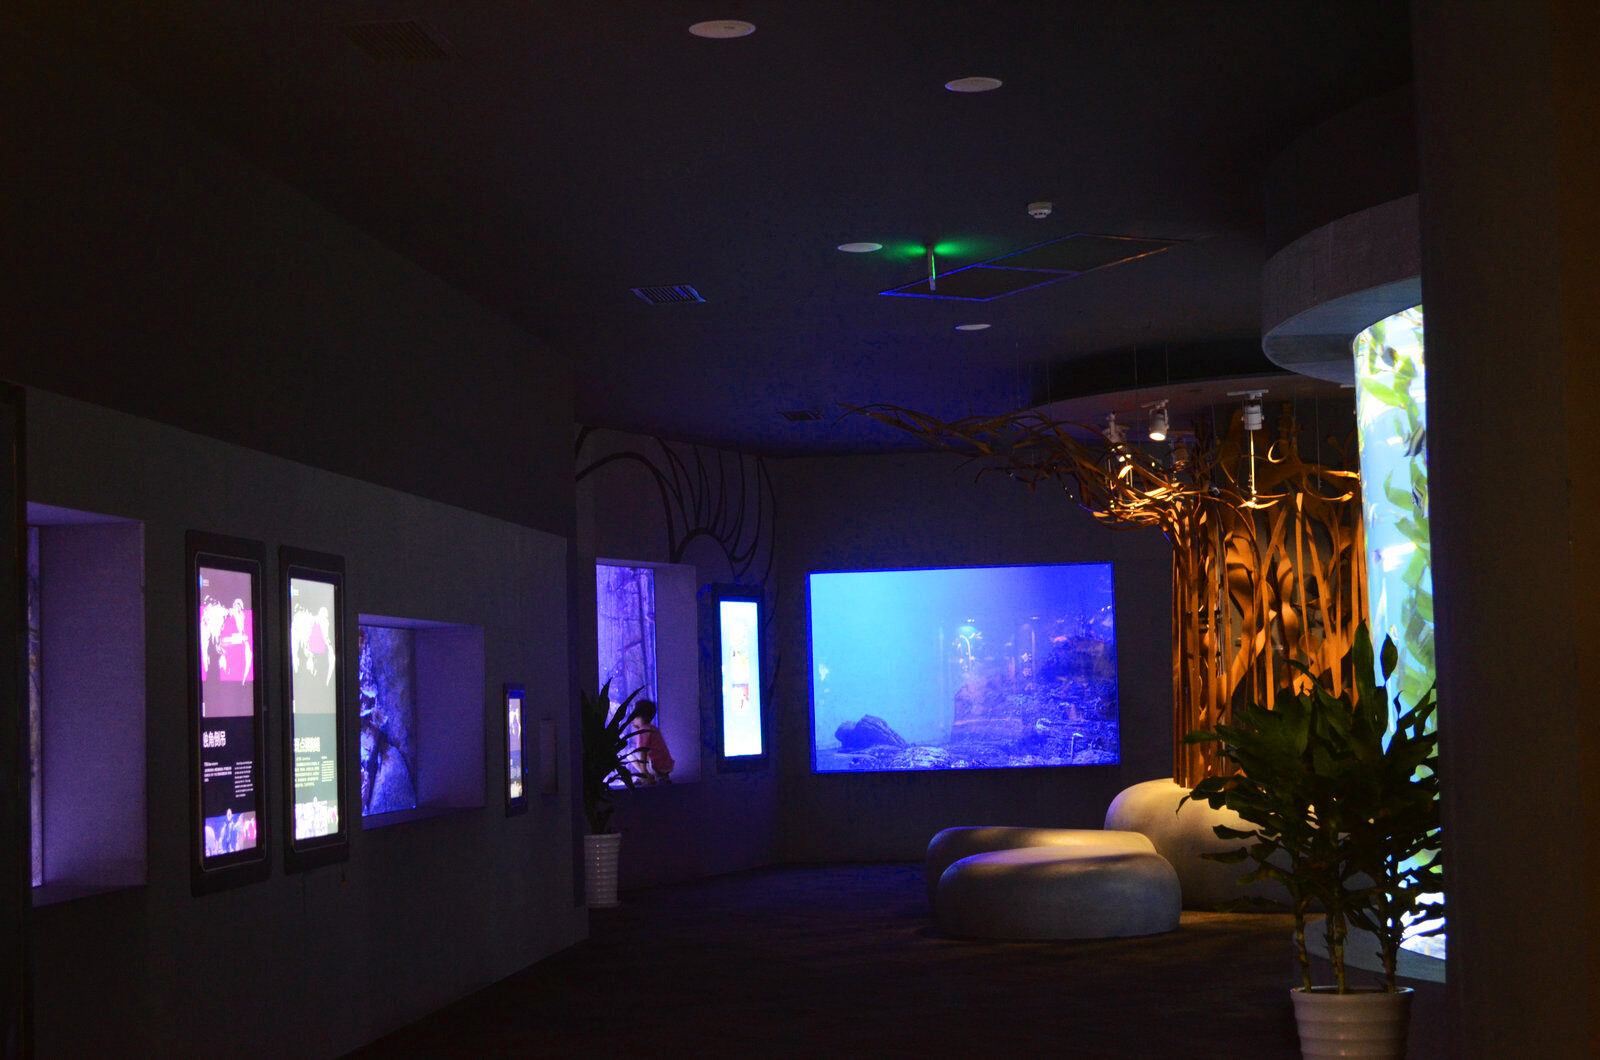 muzeum wodne kostka oświetleniowa led oceanarium